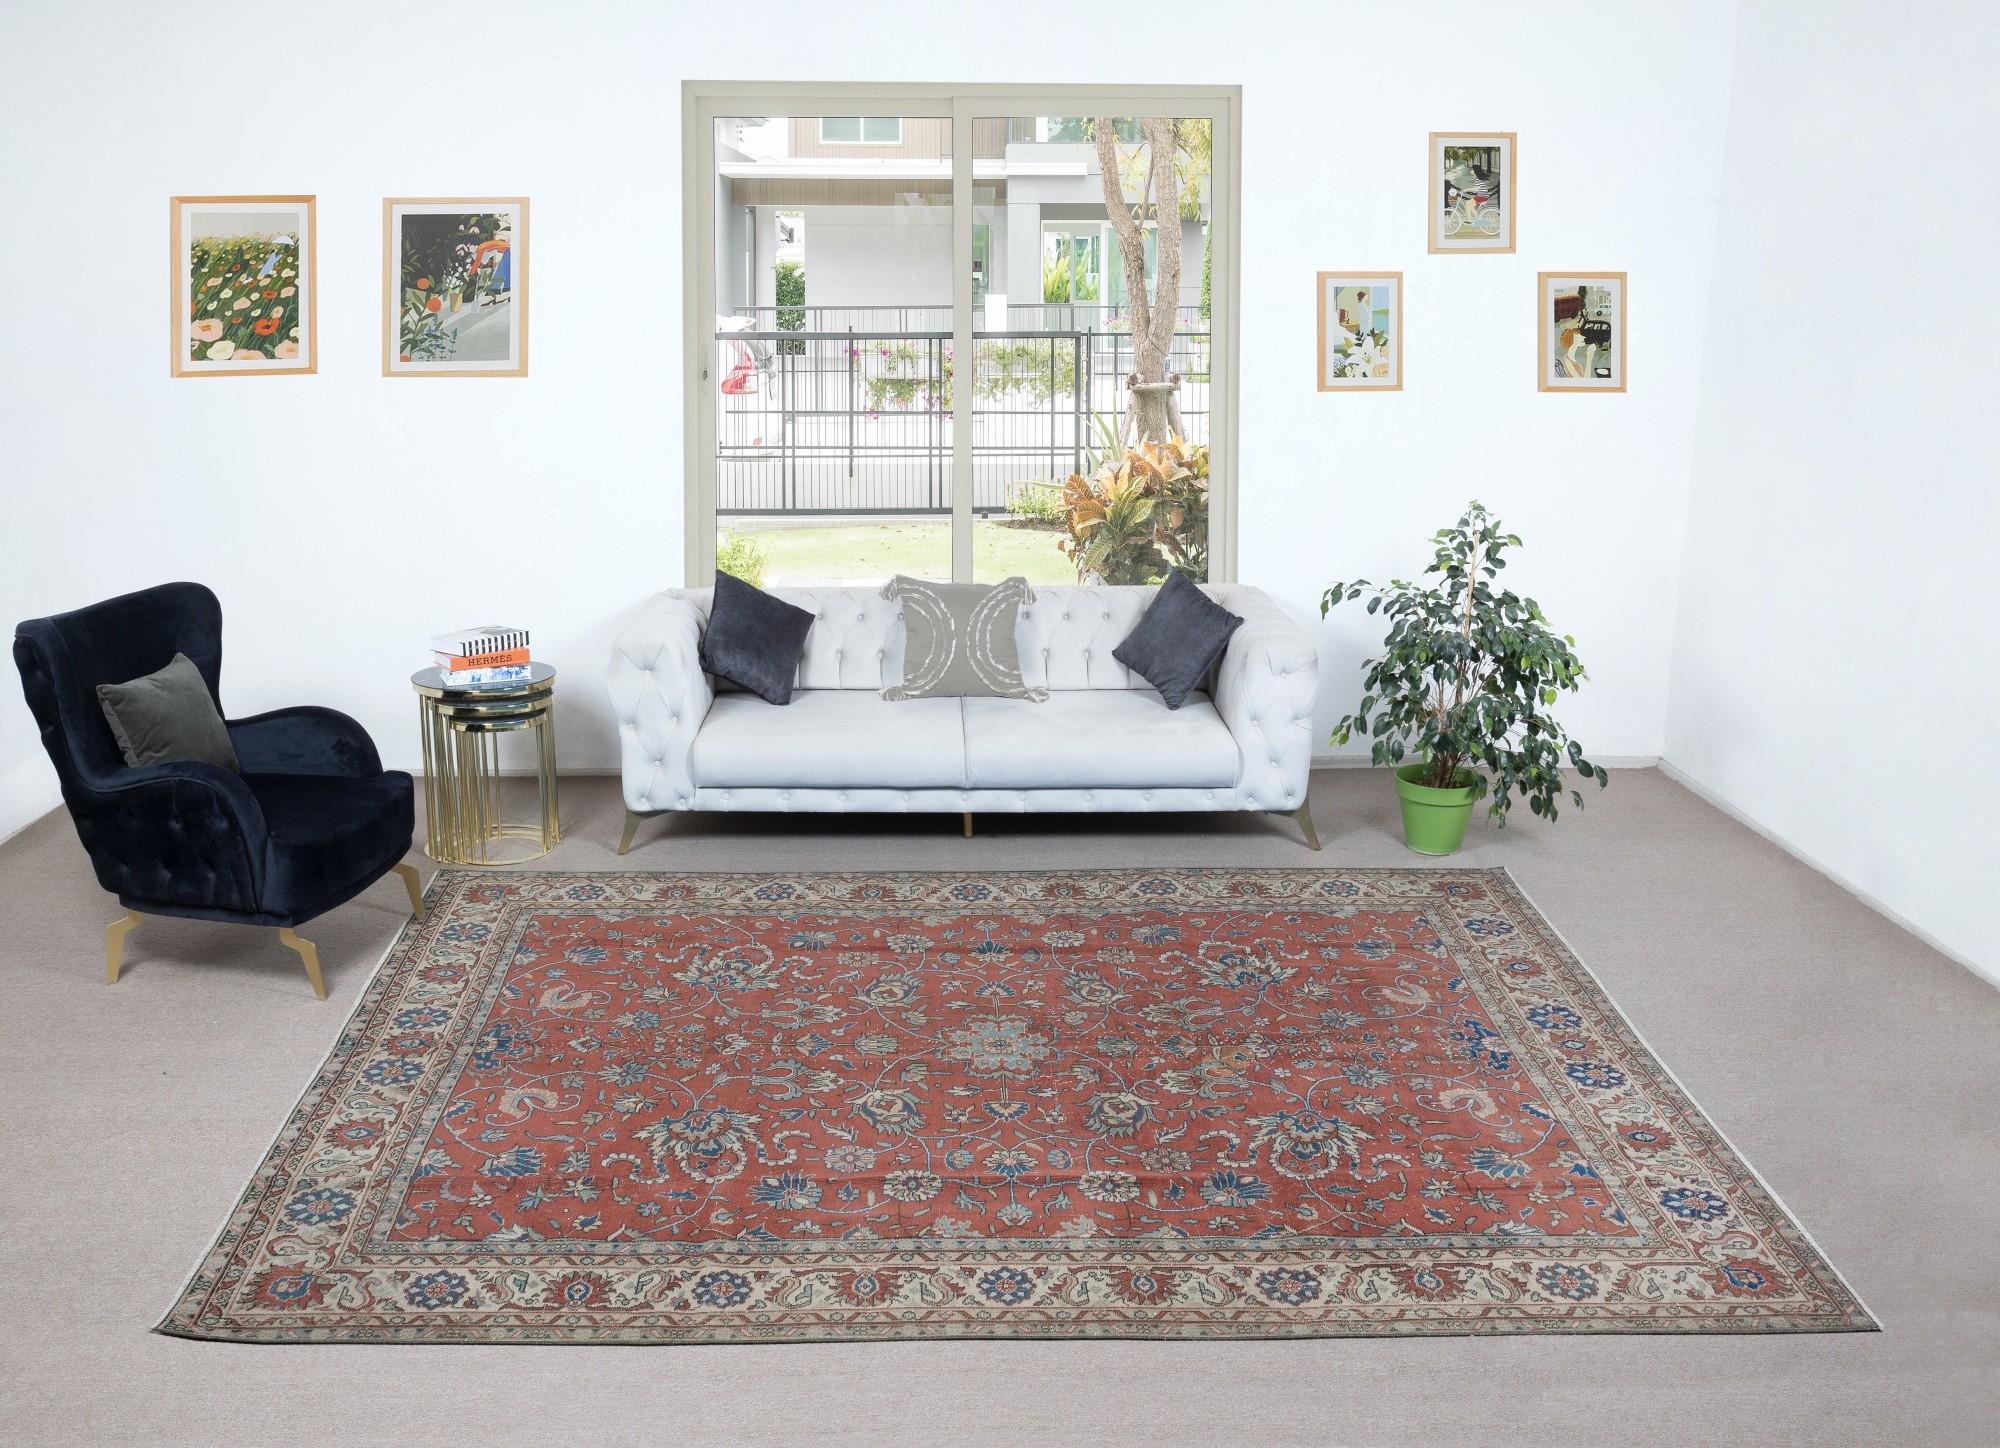 Ein feiner handgeknüpfter türkischer Teppich aus den 1960er Jahren. Der Teppich hat einen gleichmäßigen, niedrigen Wollflor auf Baumwollbasis. Es ist schwer und liegt flach auf dem Boden, in sehr gutem Zustand ohne Probleme. Er wurde professionell